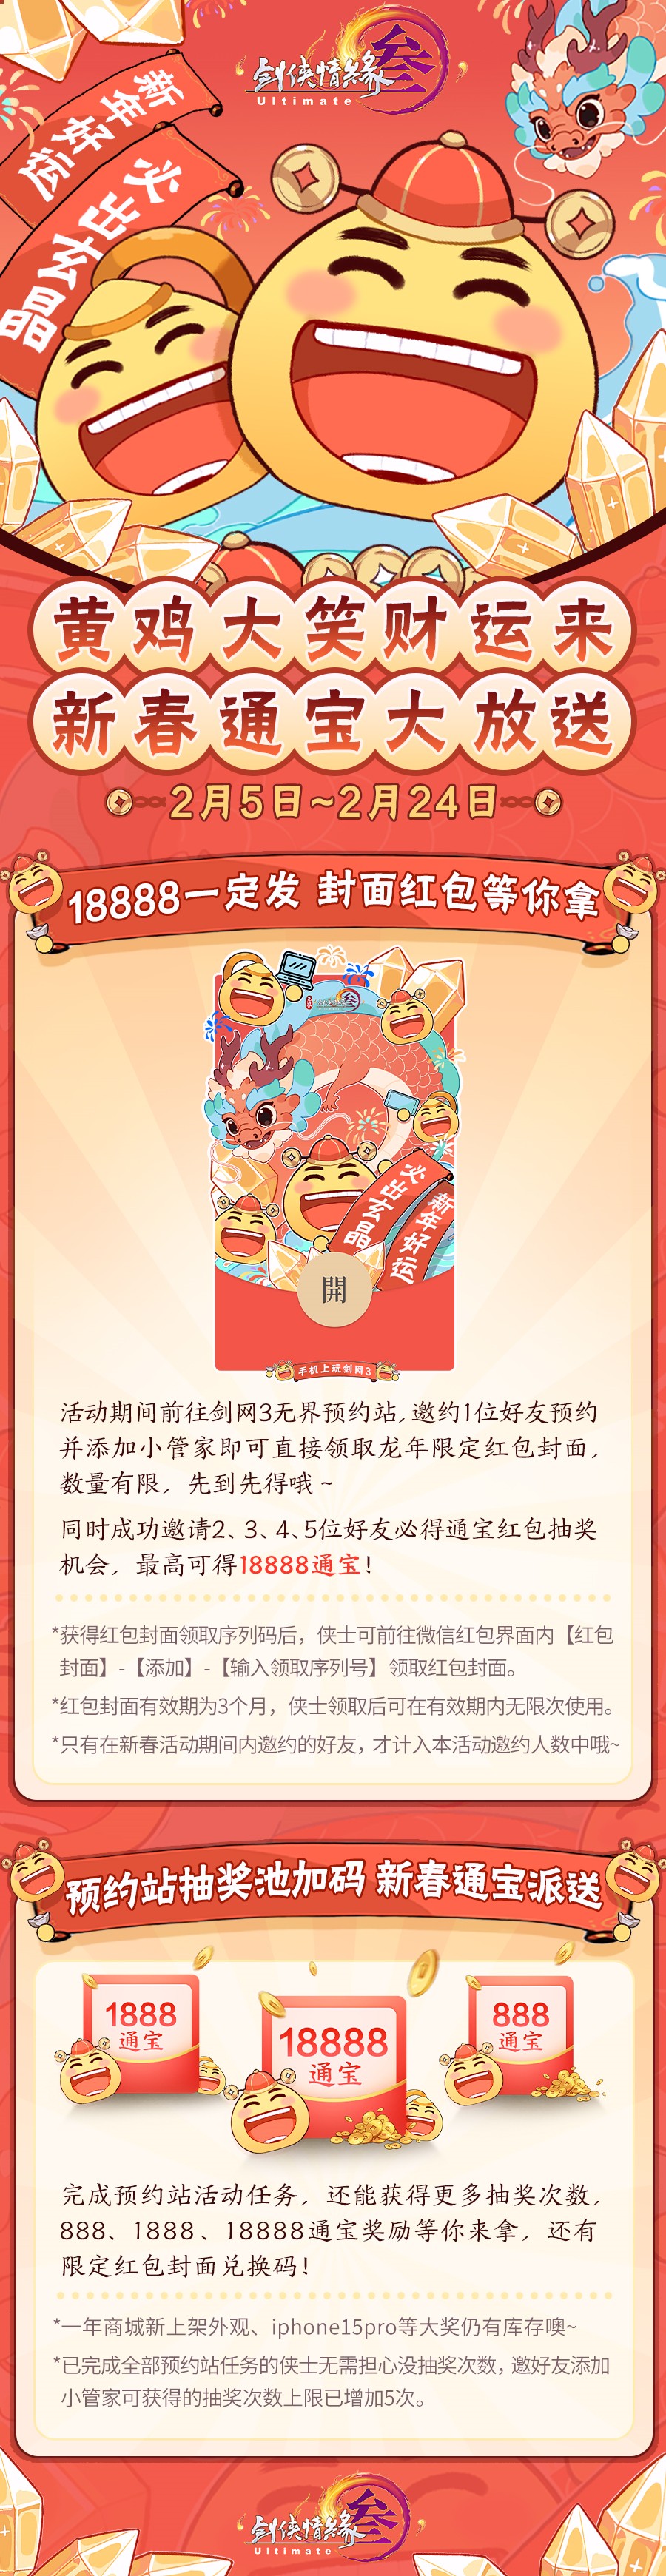 《劍網3無界》iOS預訂開啟 新春通寶利是大放送